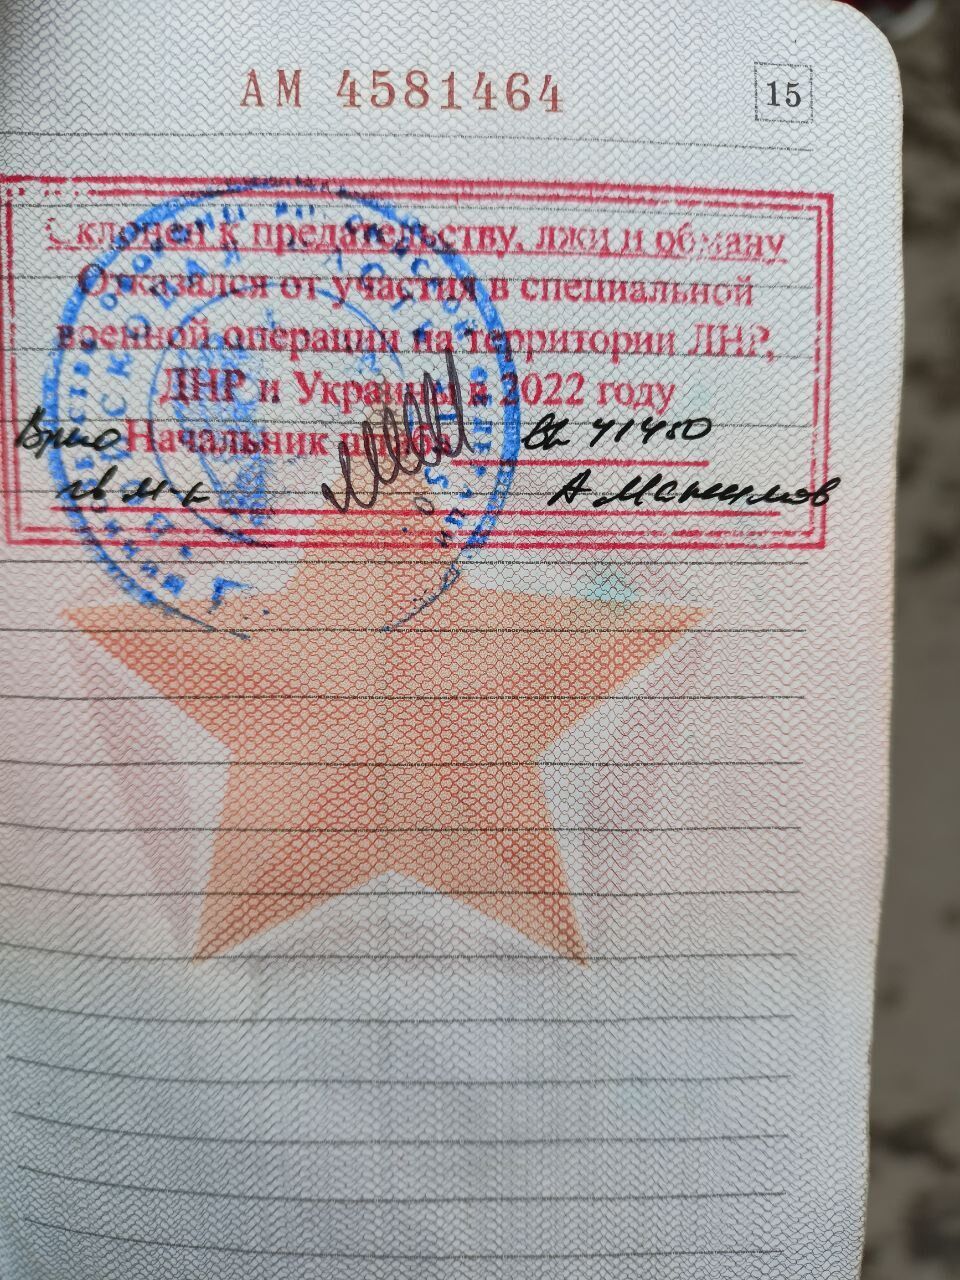 Штамп в военном билете рядового армии РФ, который он считает незаконным